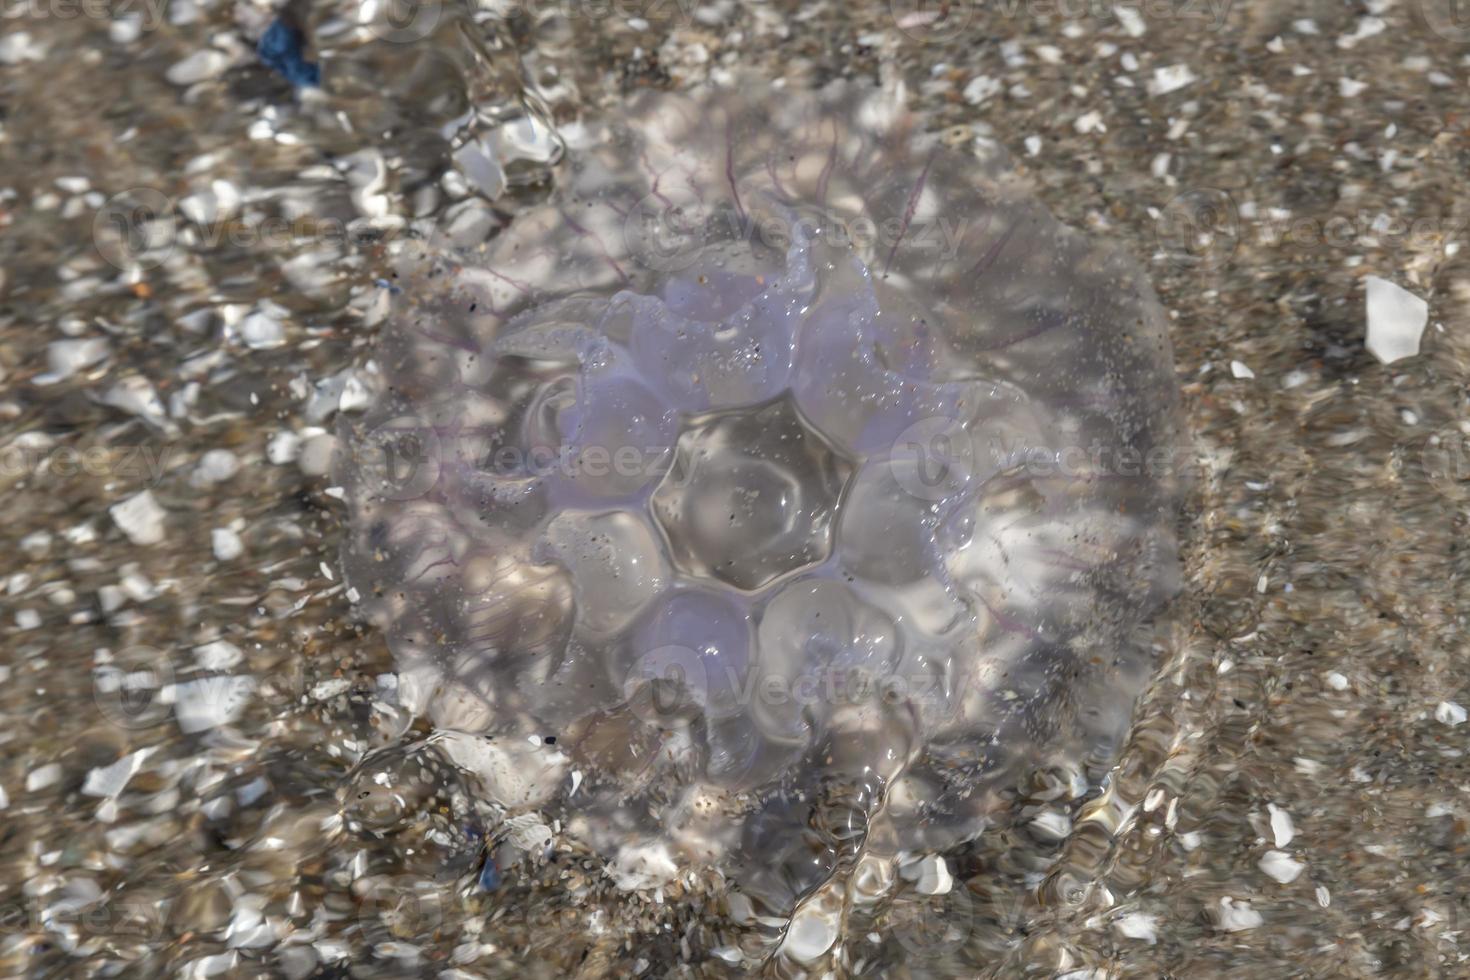 La méduse est située sur la plage allemande de la mer baltique avec des vagues photo